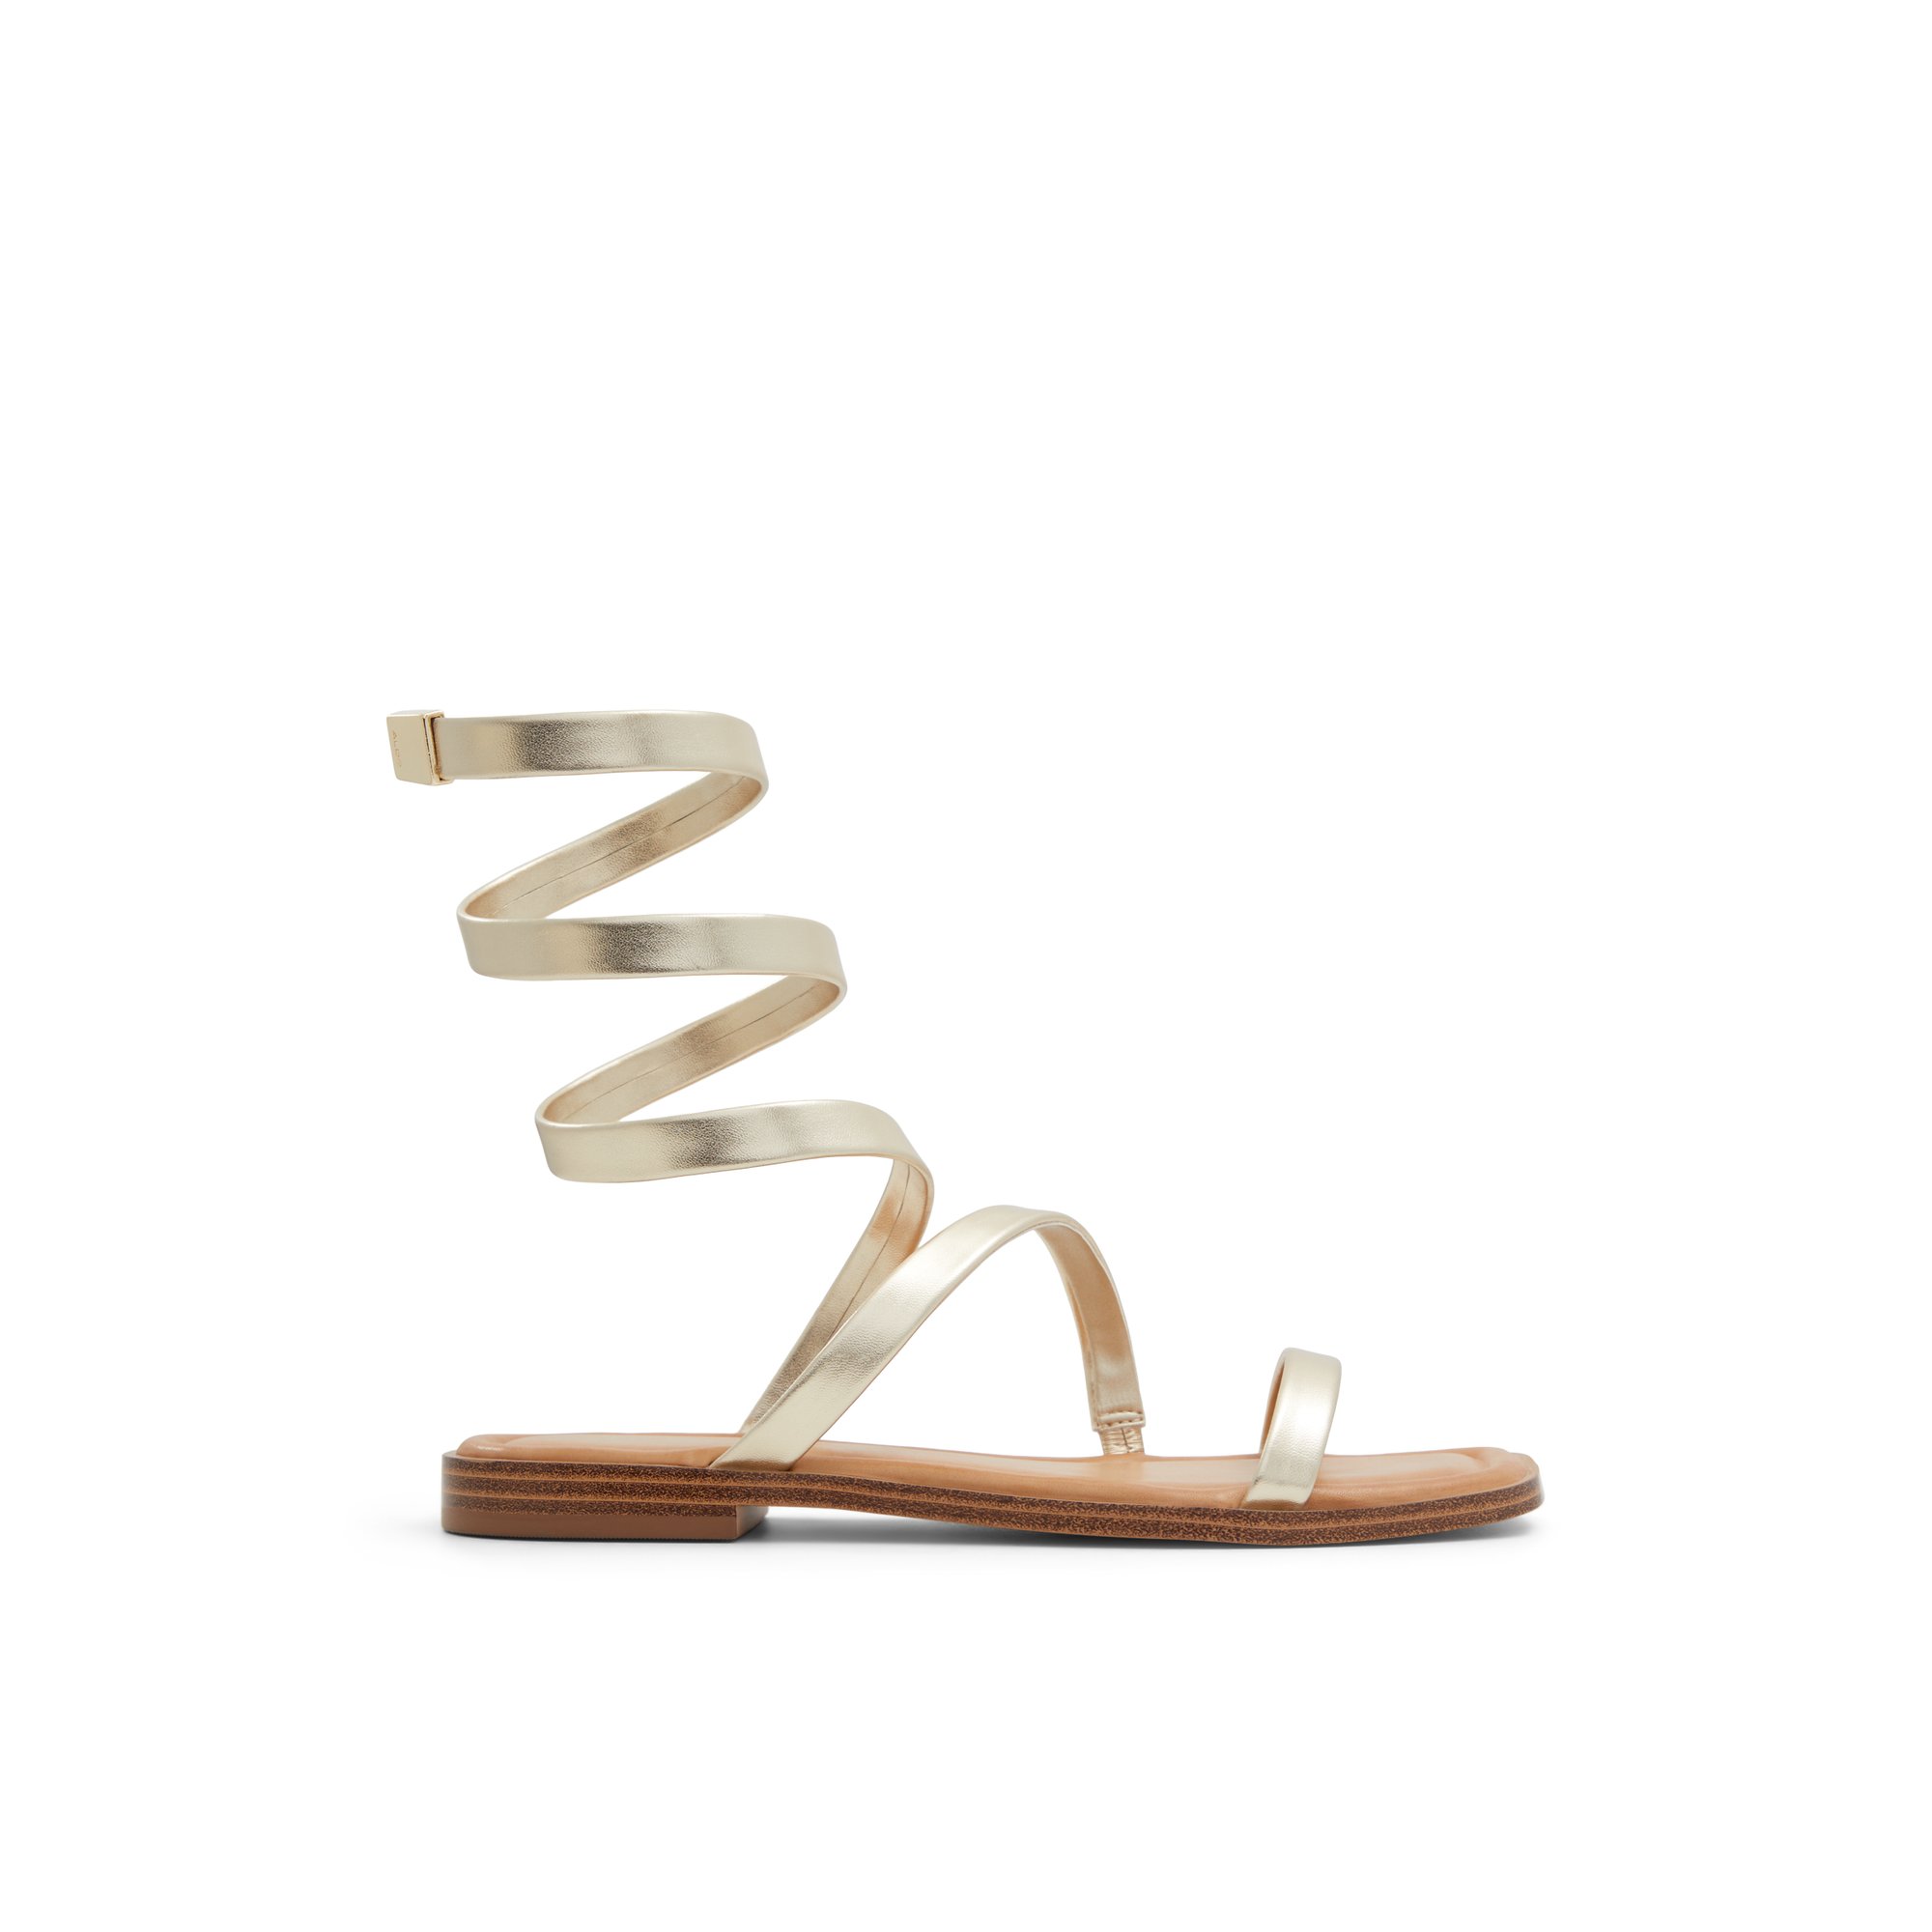 ALDO Spinella - Women's Flat Sandals - Gold